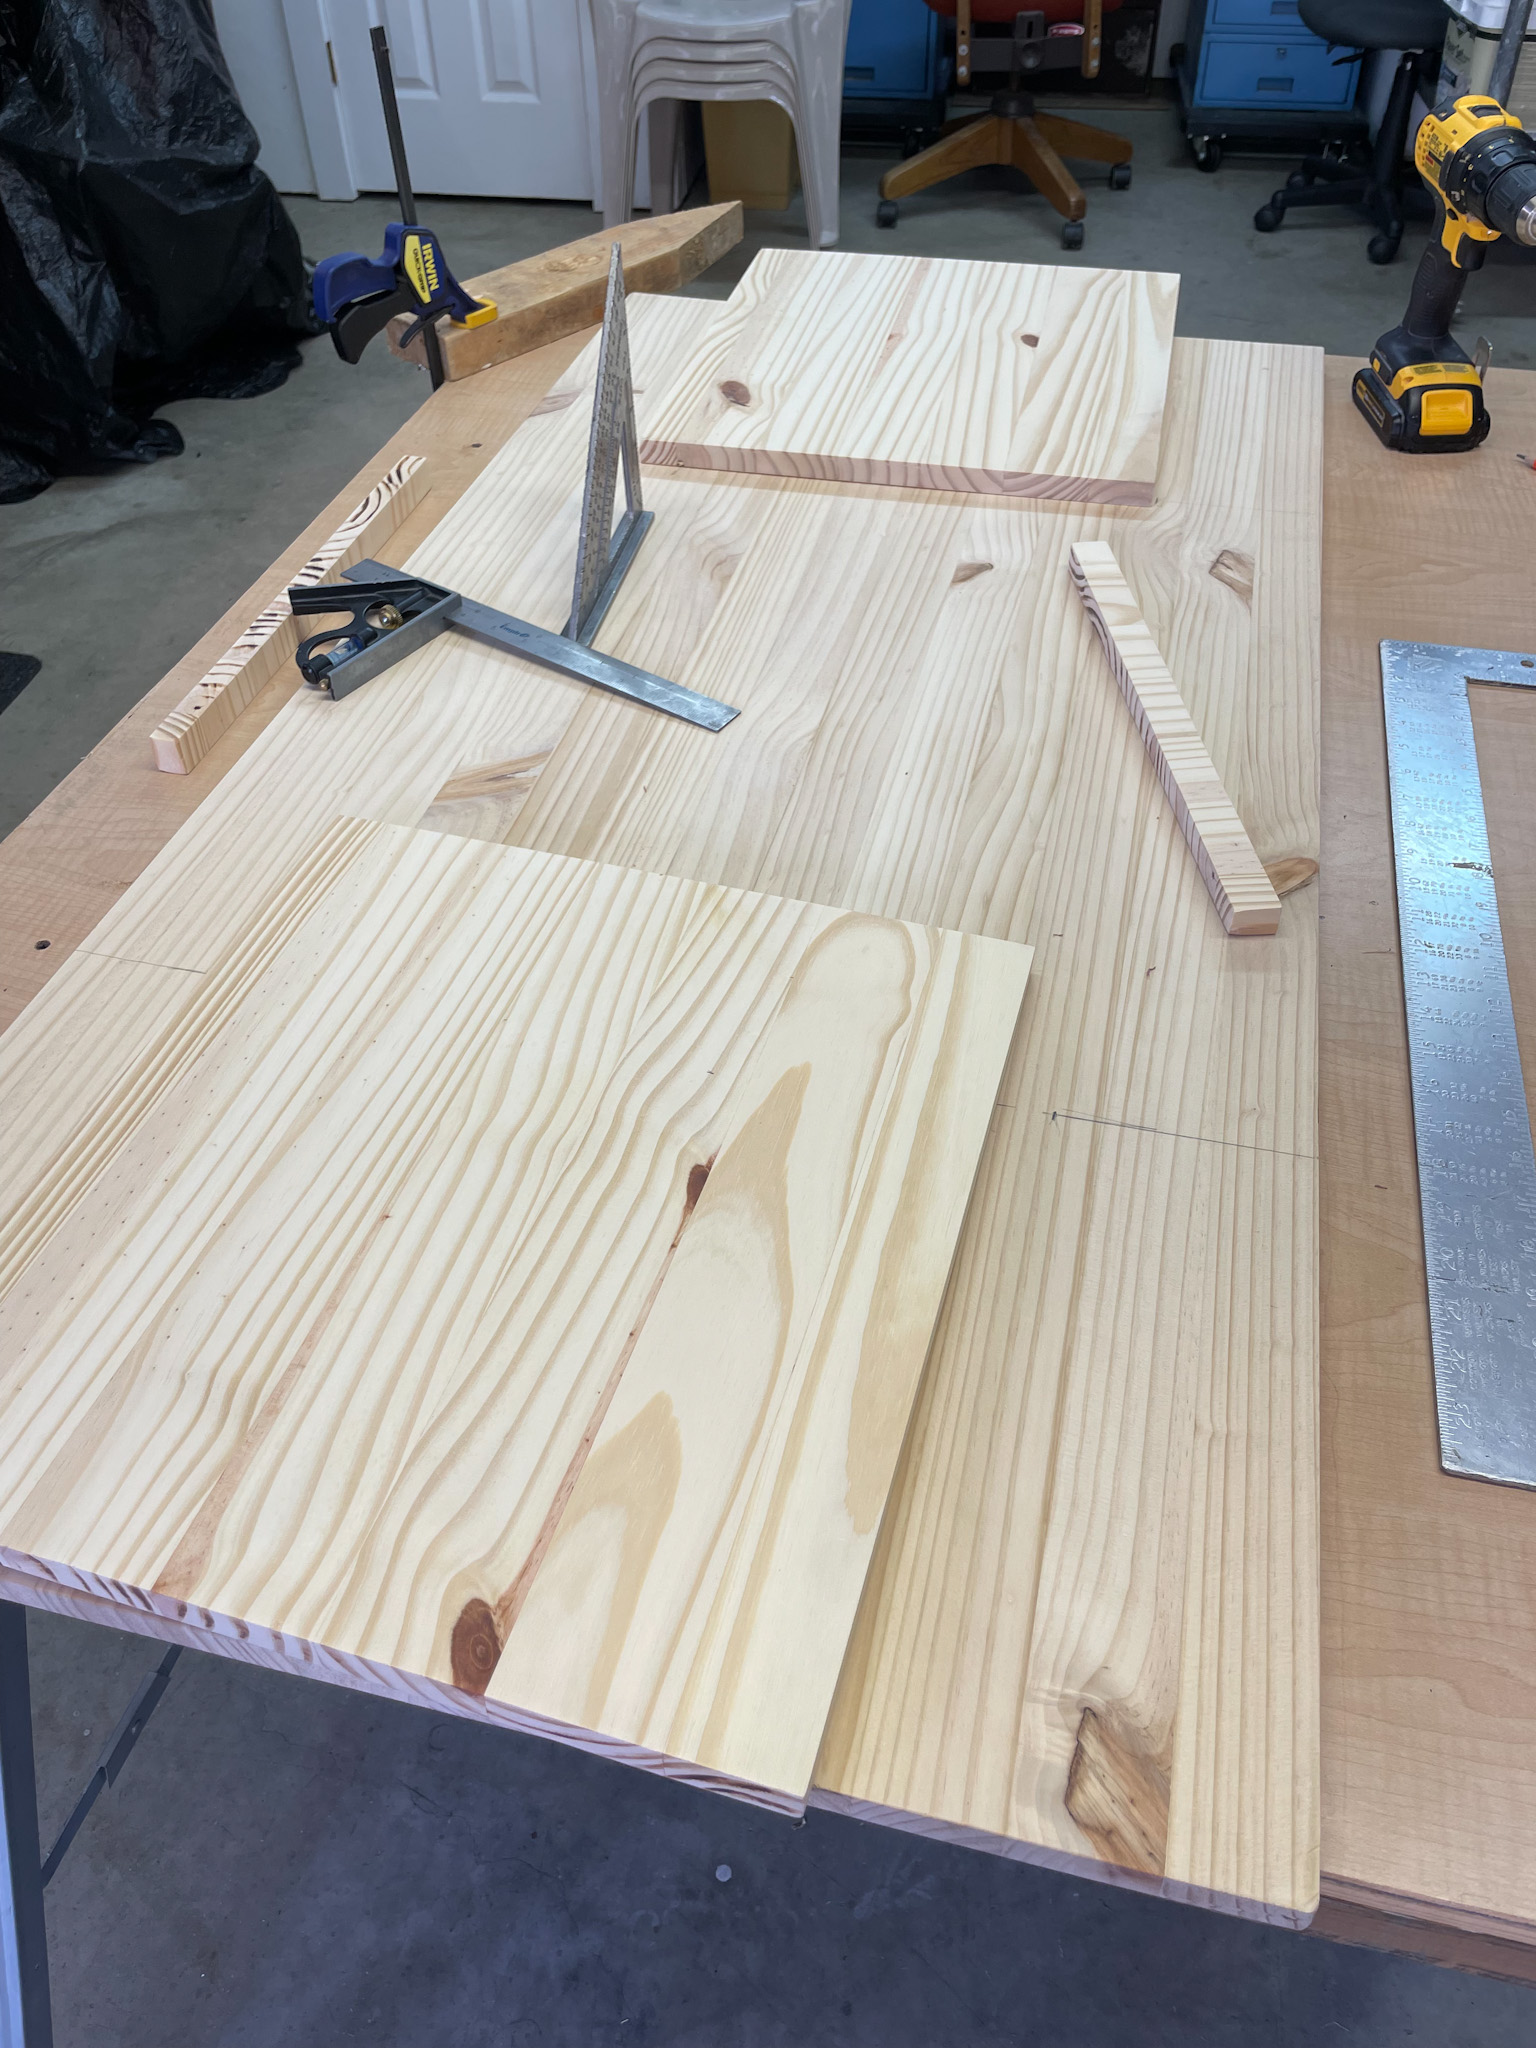 cutting wood in workshop